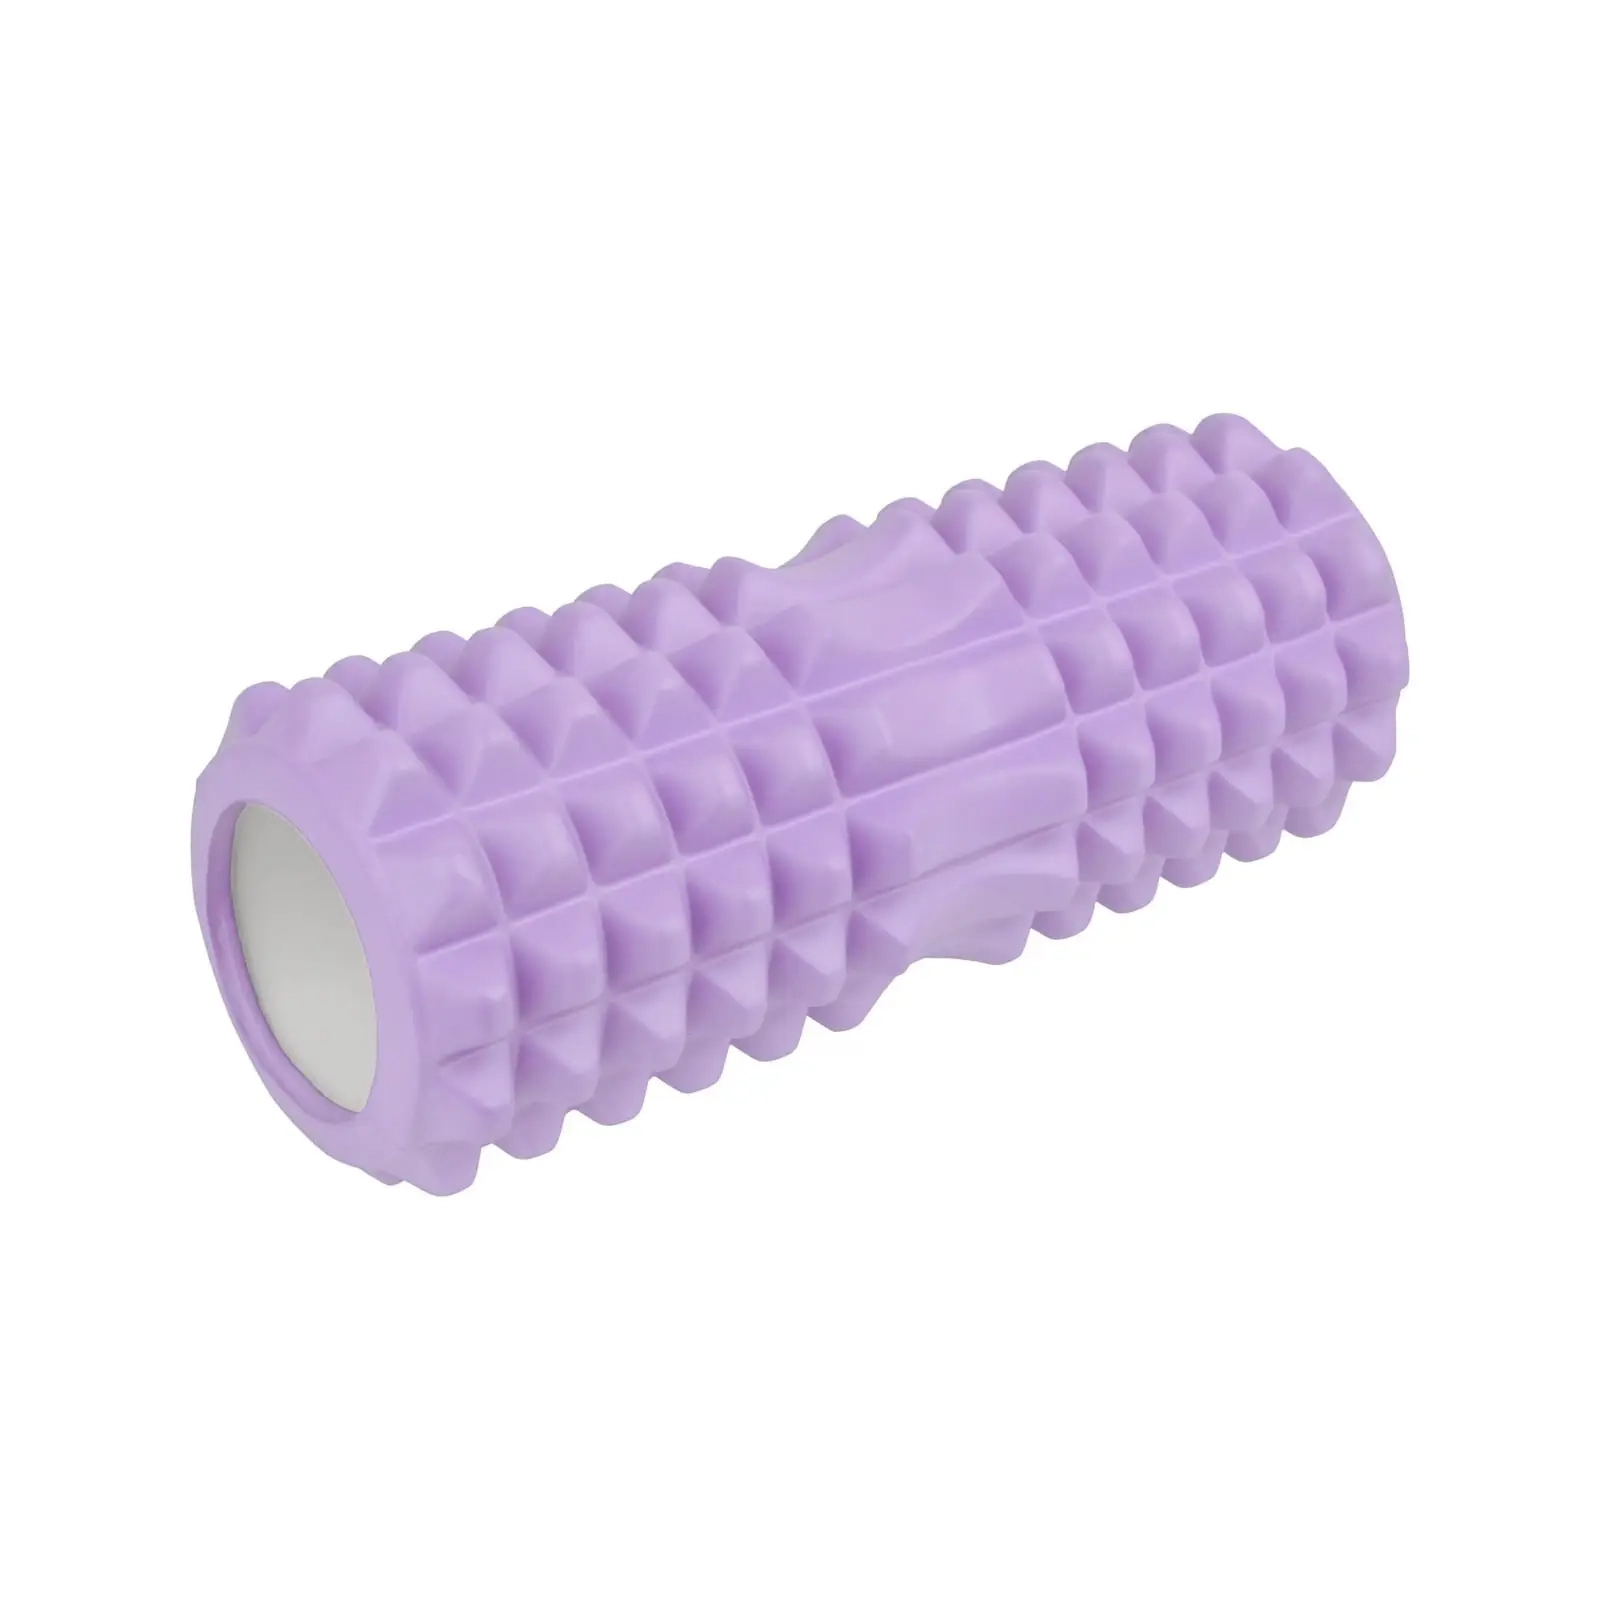 Масажный ролик U-Powex UP_1010 EVA foam roller 33x14см Type 2 Pink (UP_1010_T2_Pink)